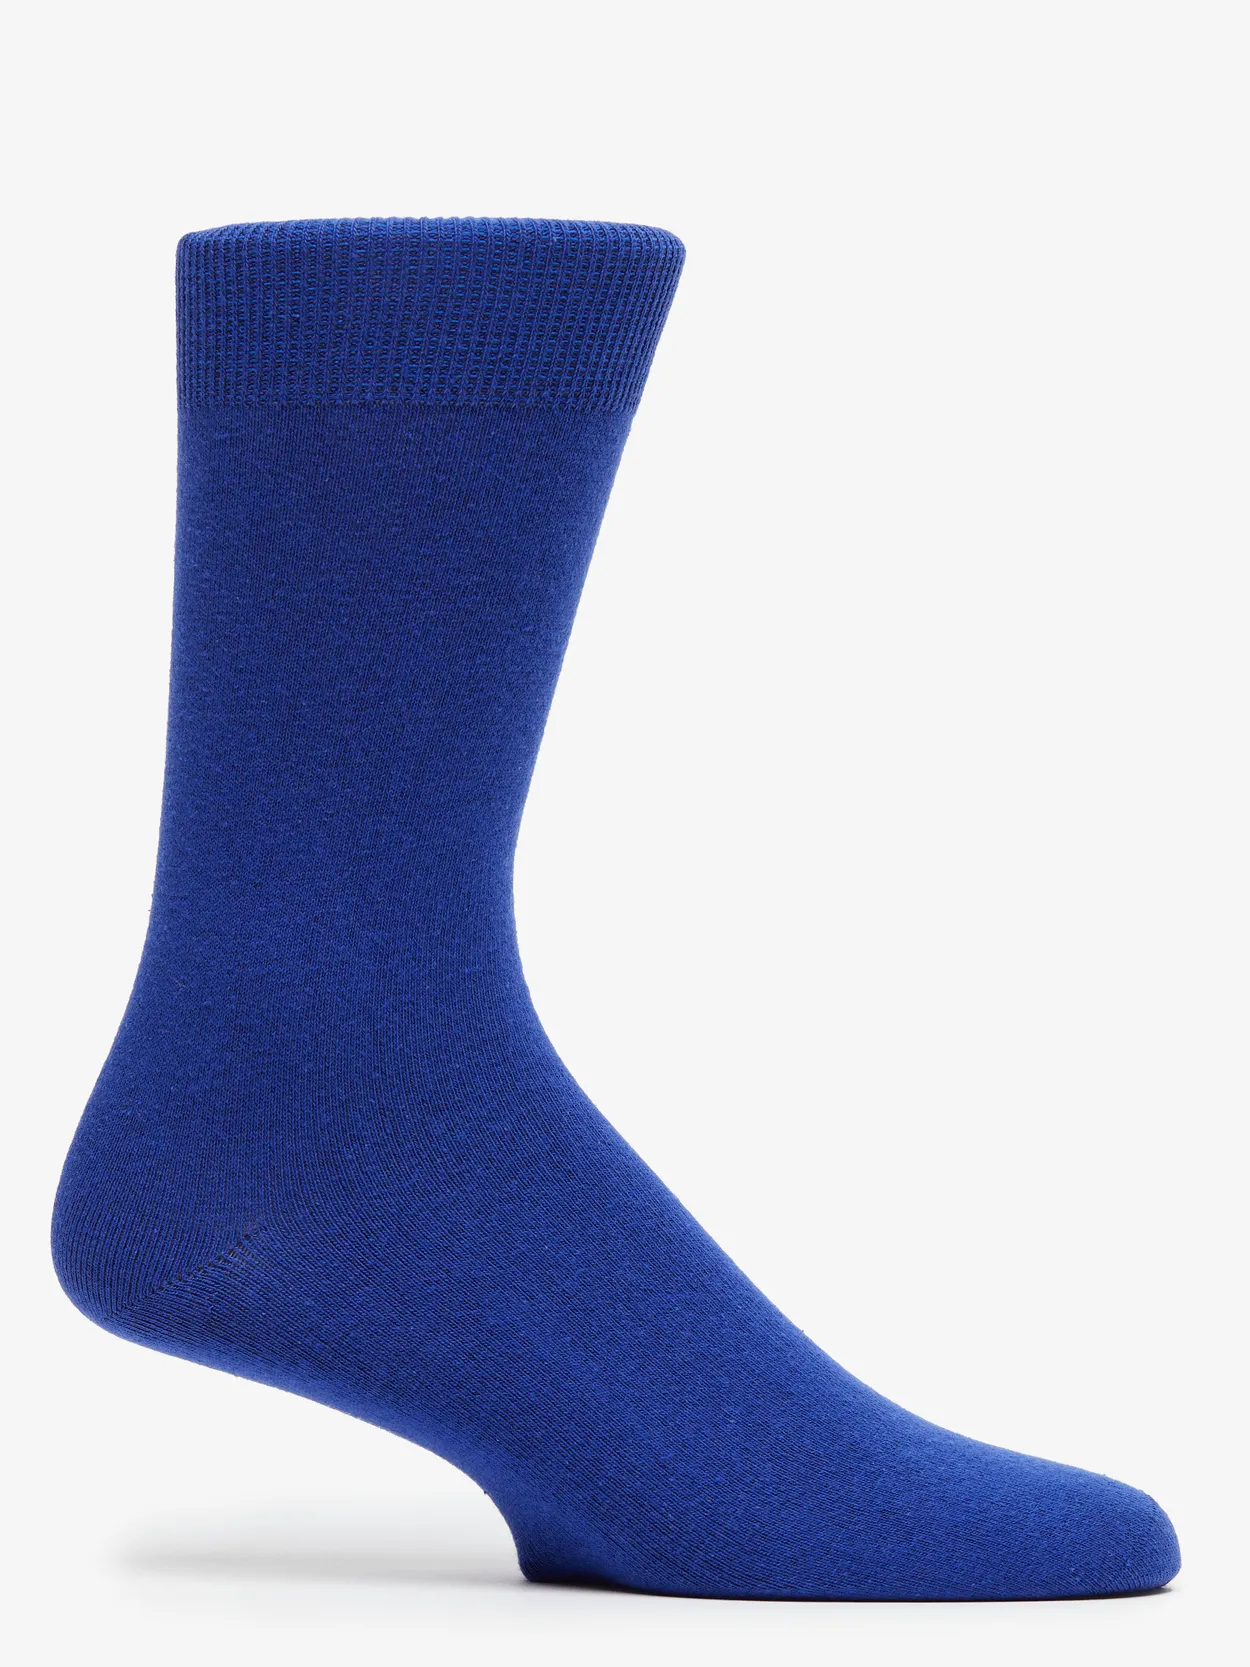 Cobolt Blue Socks Rye